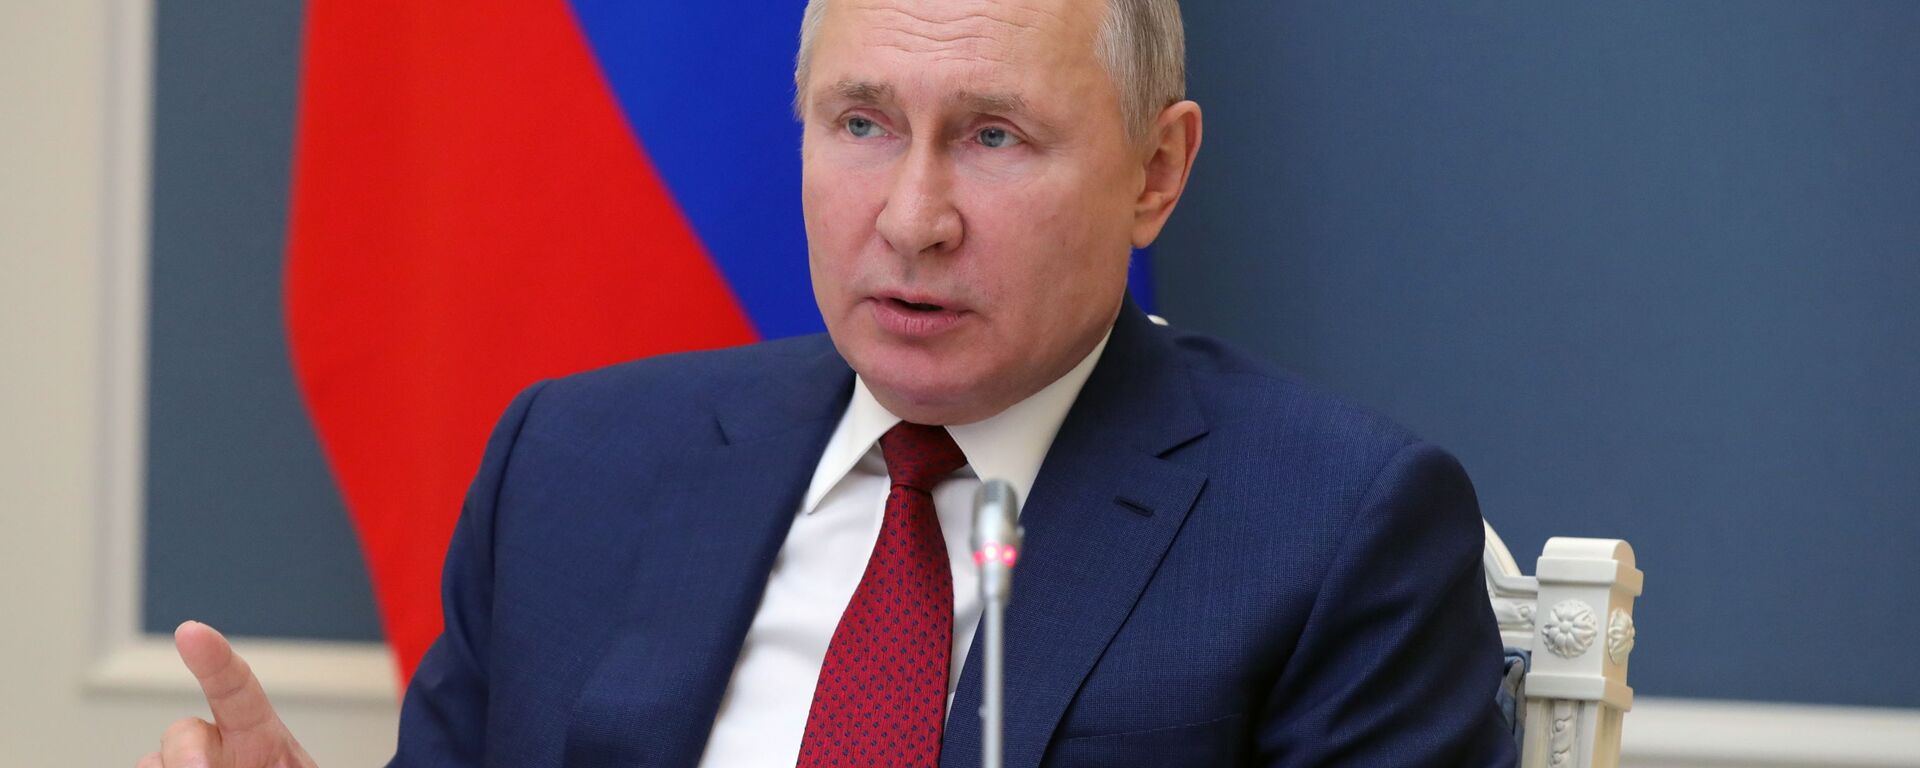 Prezident RF V. Putin vыstupil na sessii onlayn-foruma Davosskaya povestka dnya 2021 - Sputnik Oʻzbekiston, 1920, 23.03.2021